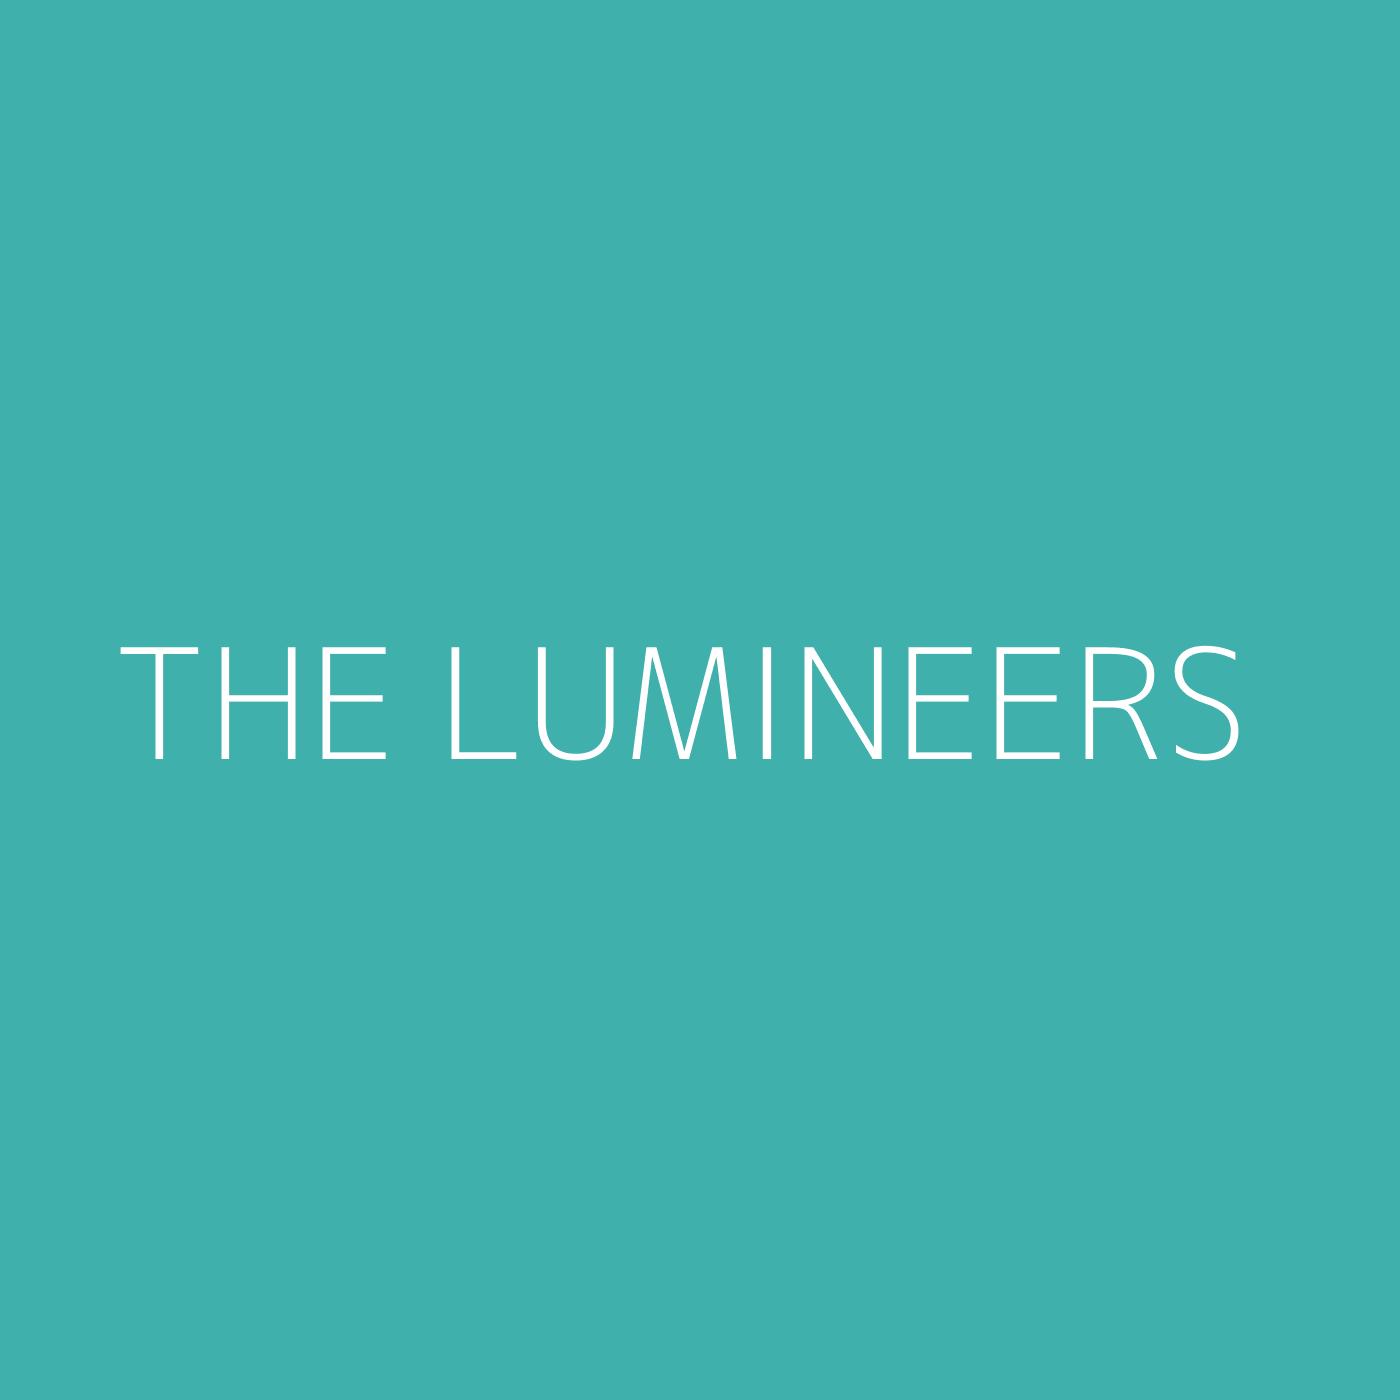 The Lumineers Playlist Artwork